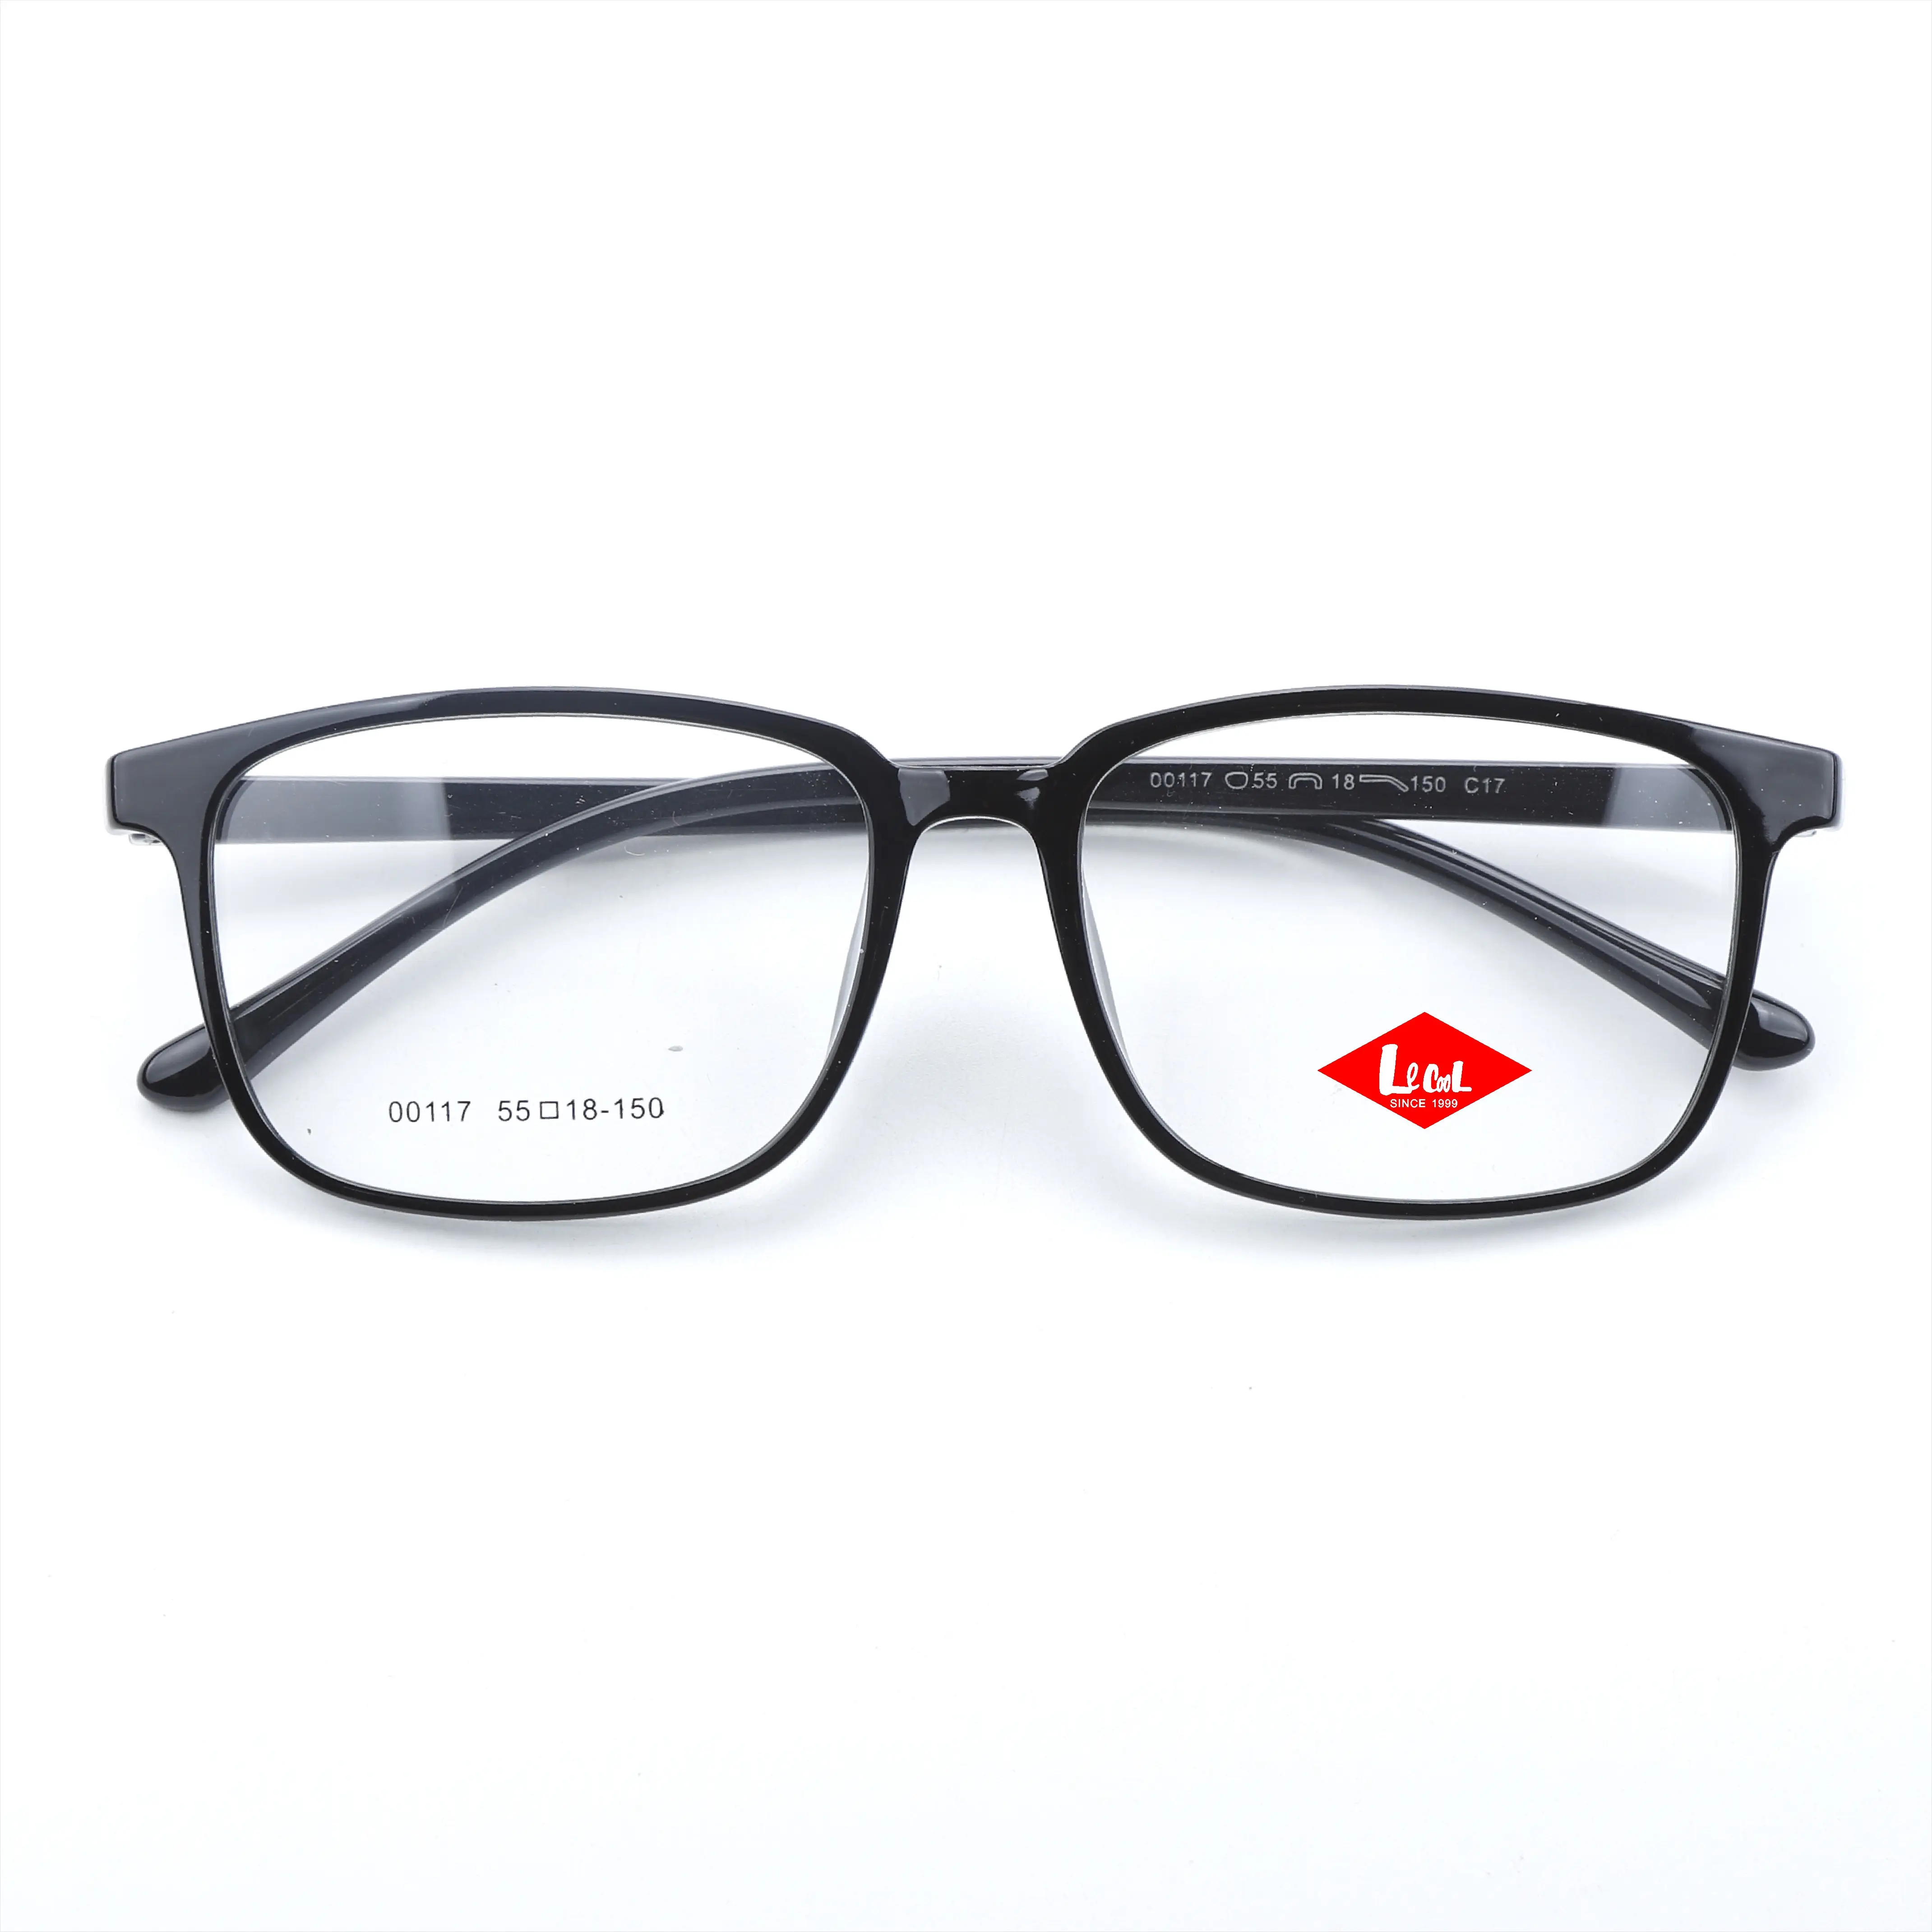 OEM TR90 Prescription lunettes optique mince colorées Designers hommes pliant transparent lunettes lunettes cadre Guangzhou